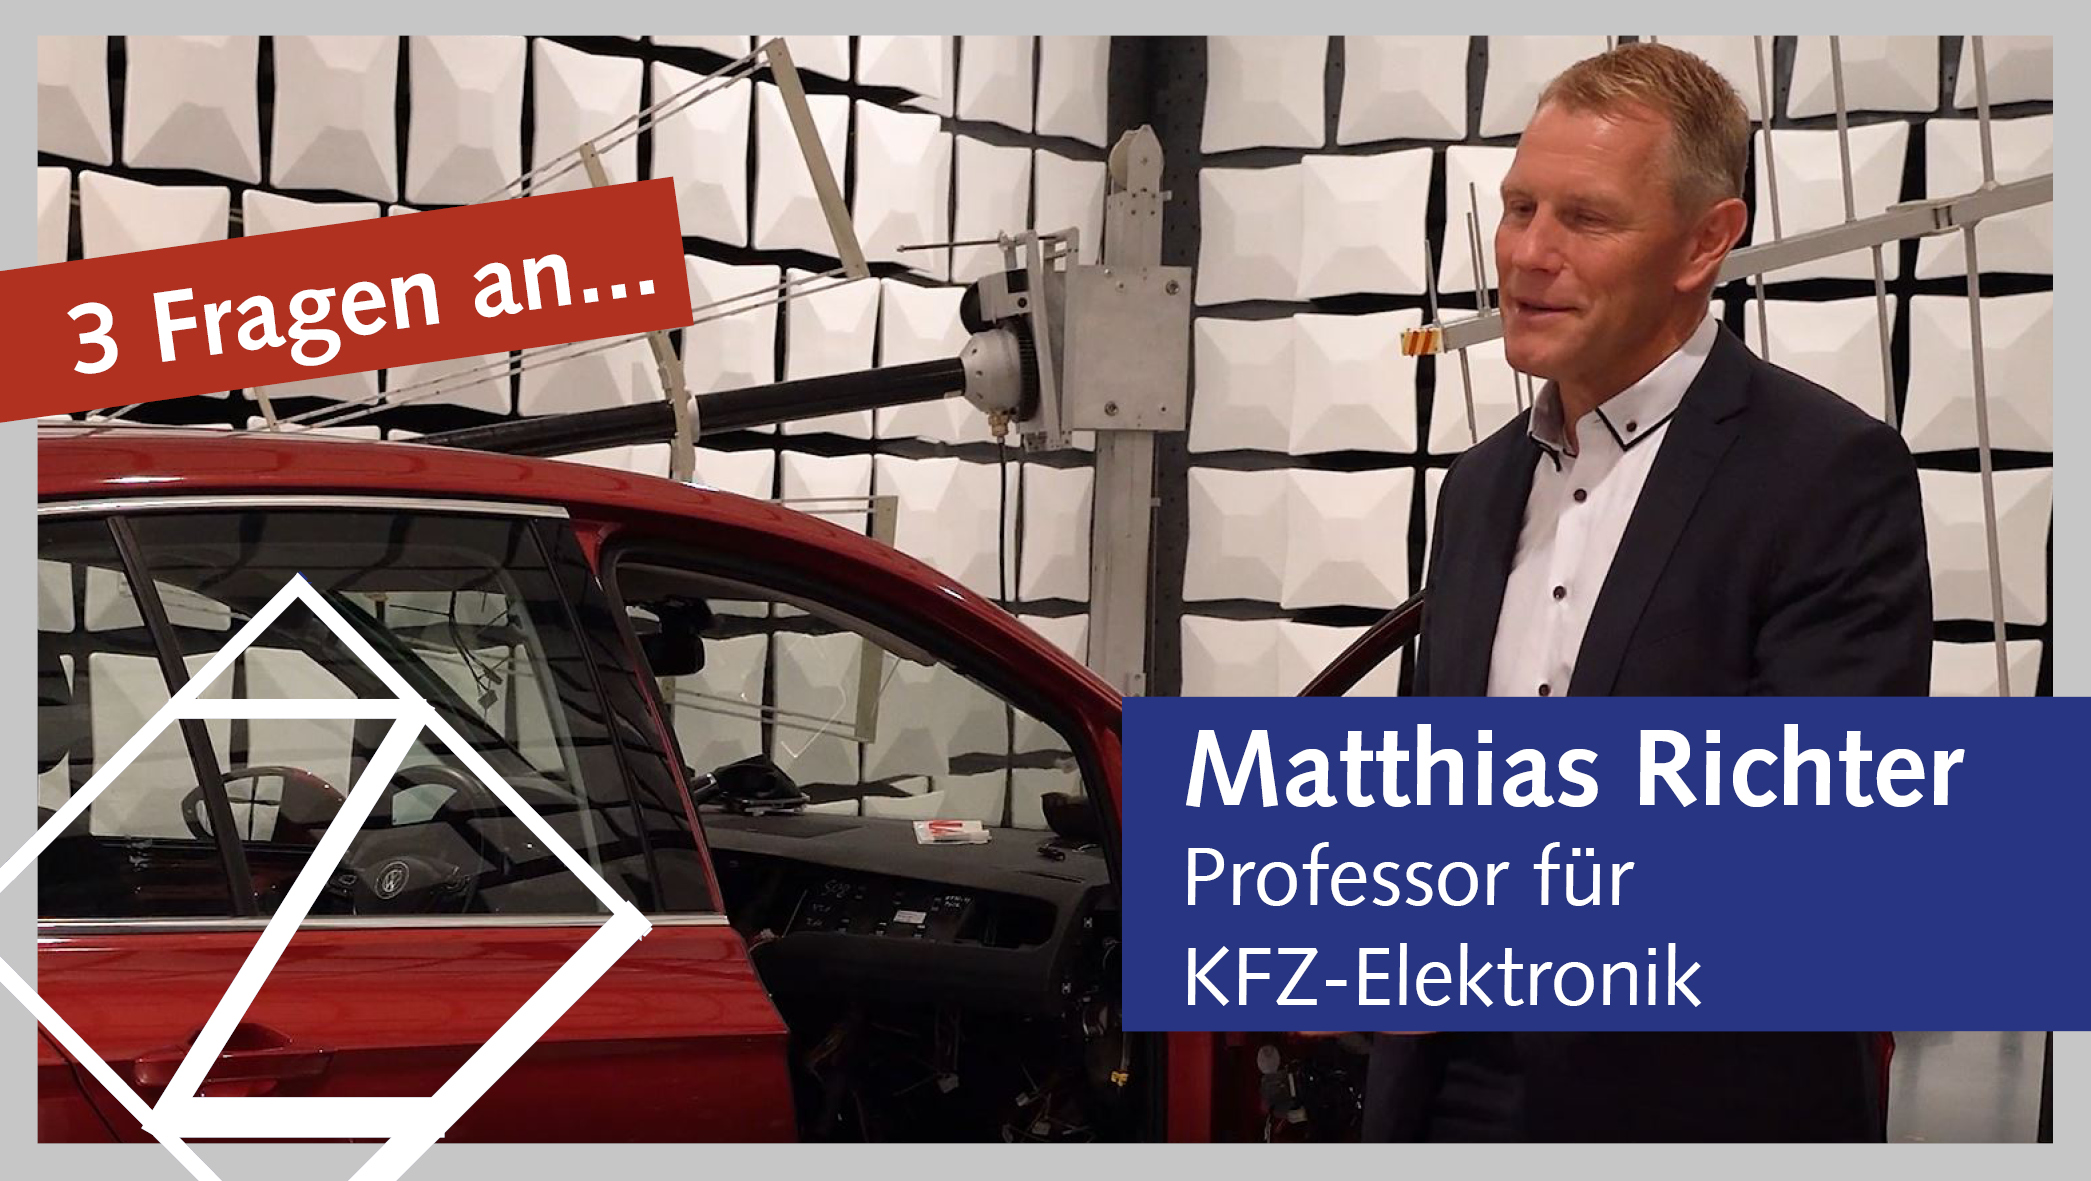 Professor Matthias Richter steht in einer futuristischen Laborhalle. Neben ihm ein rotes Fahrzeug, dessen Innenverkleidung teilweise abgebaut ist, sodass die sich dahinter befindliche Elektronik sichtbar wird. Auf das Fahrzeug sind mehrere Antennen gerichtet.